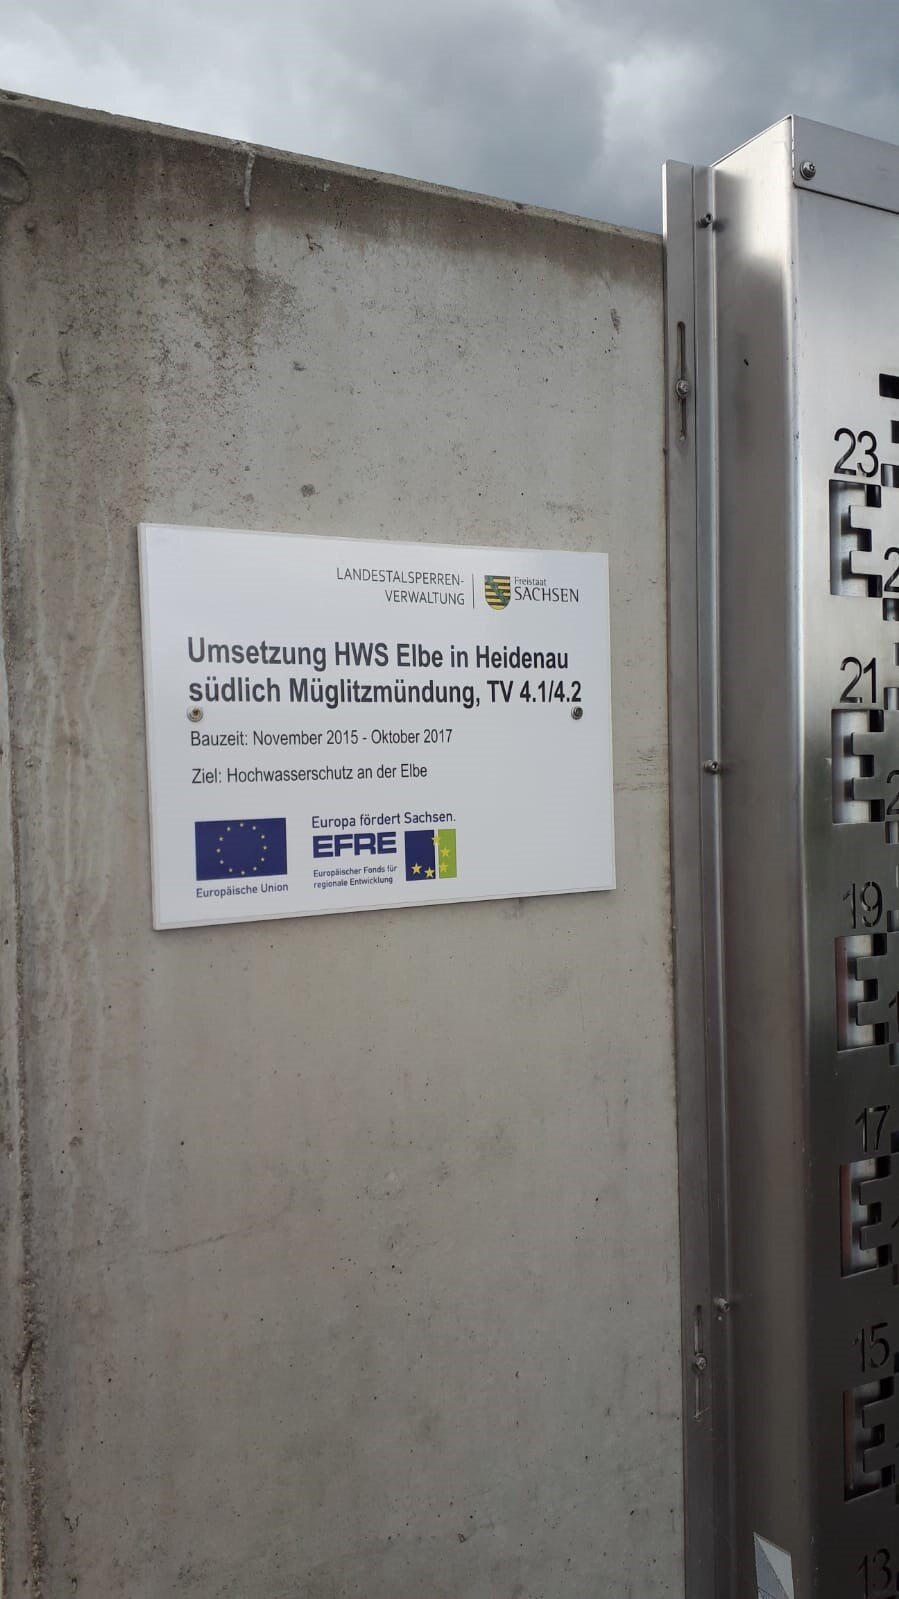 Ein Schild zum Projekt mit EU-Logos, angebracht auf einer Betonmauer